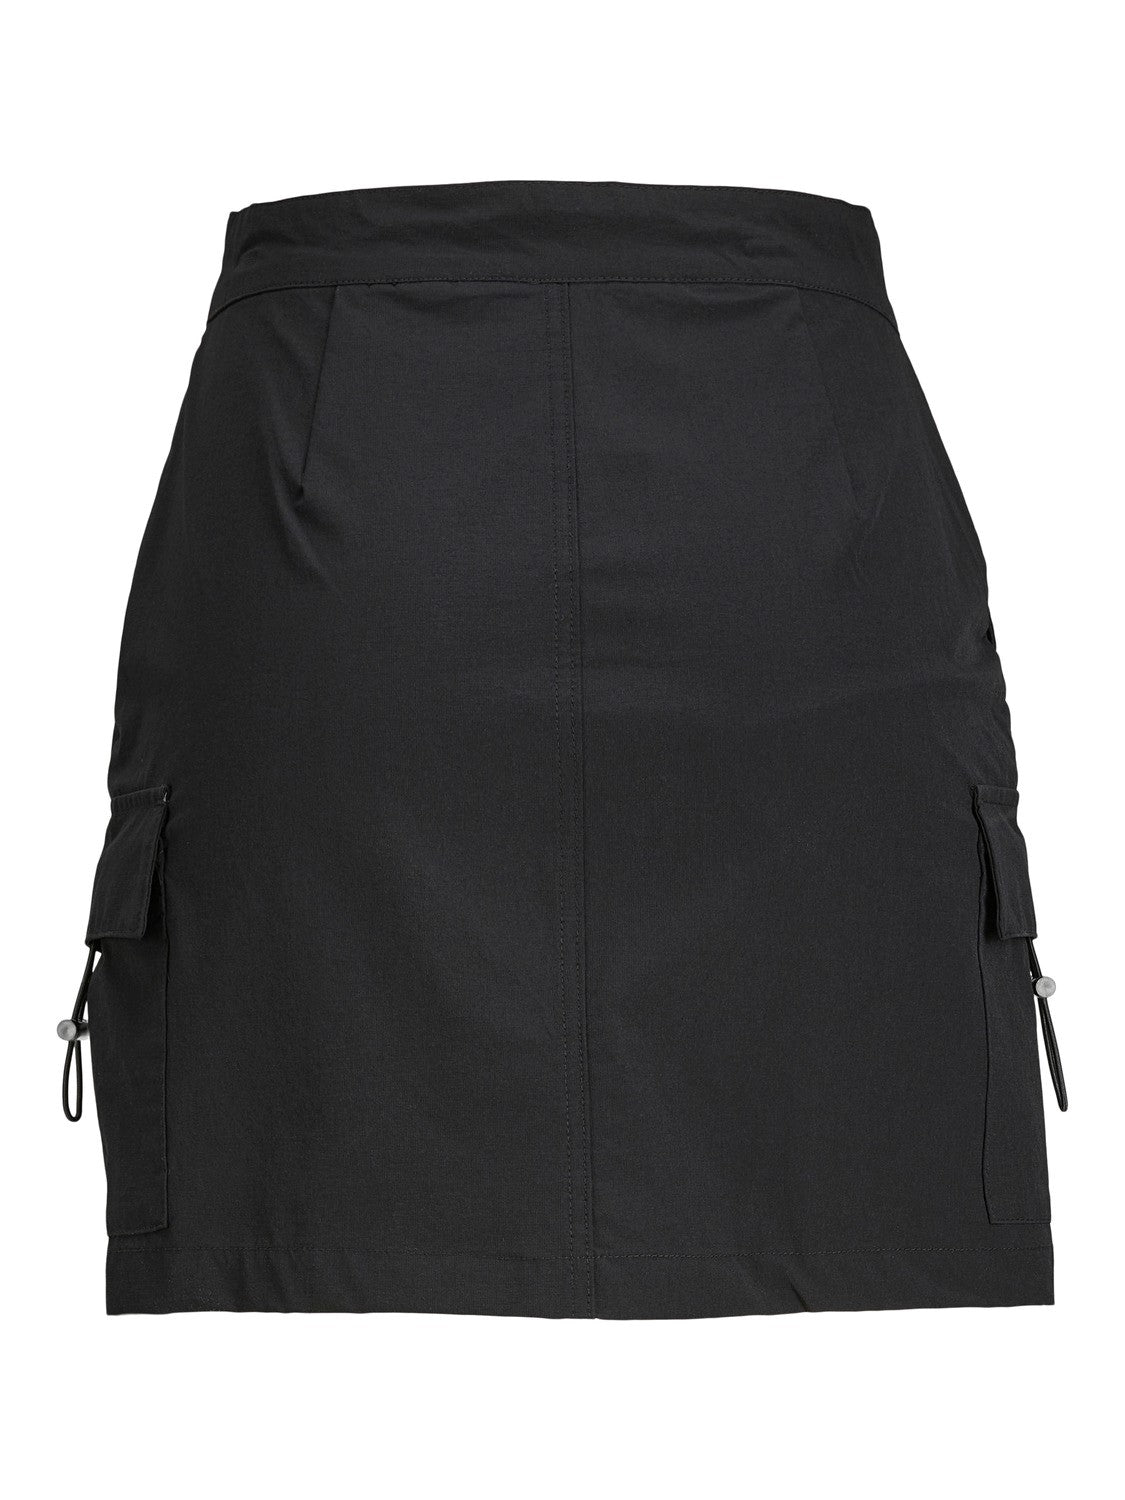 JXHINT Cargo Skirt